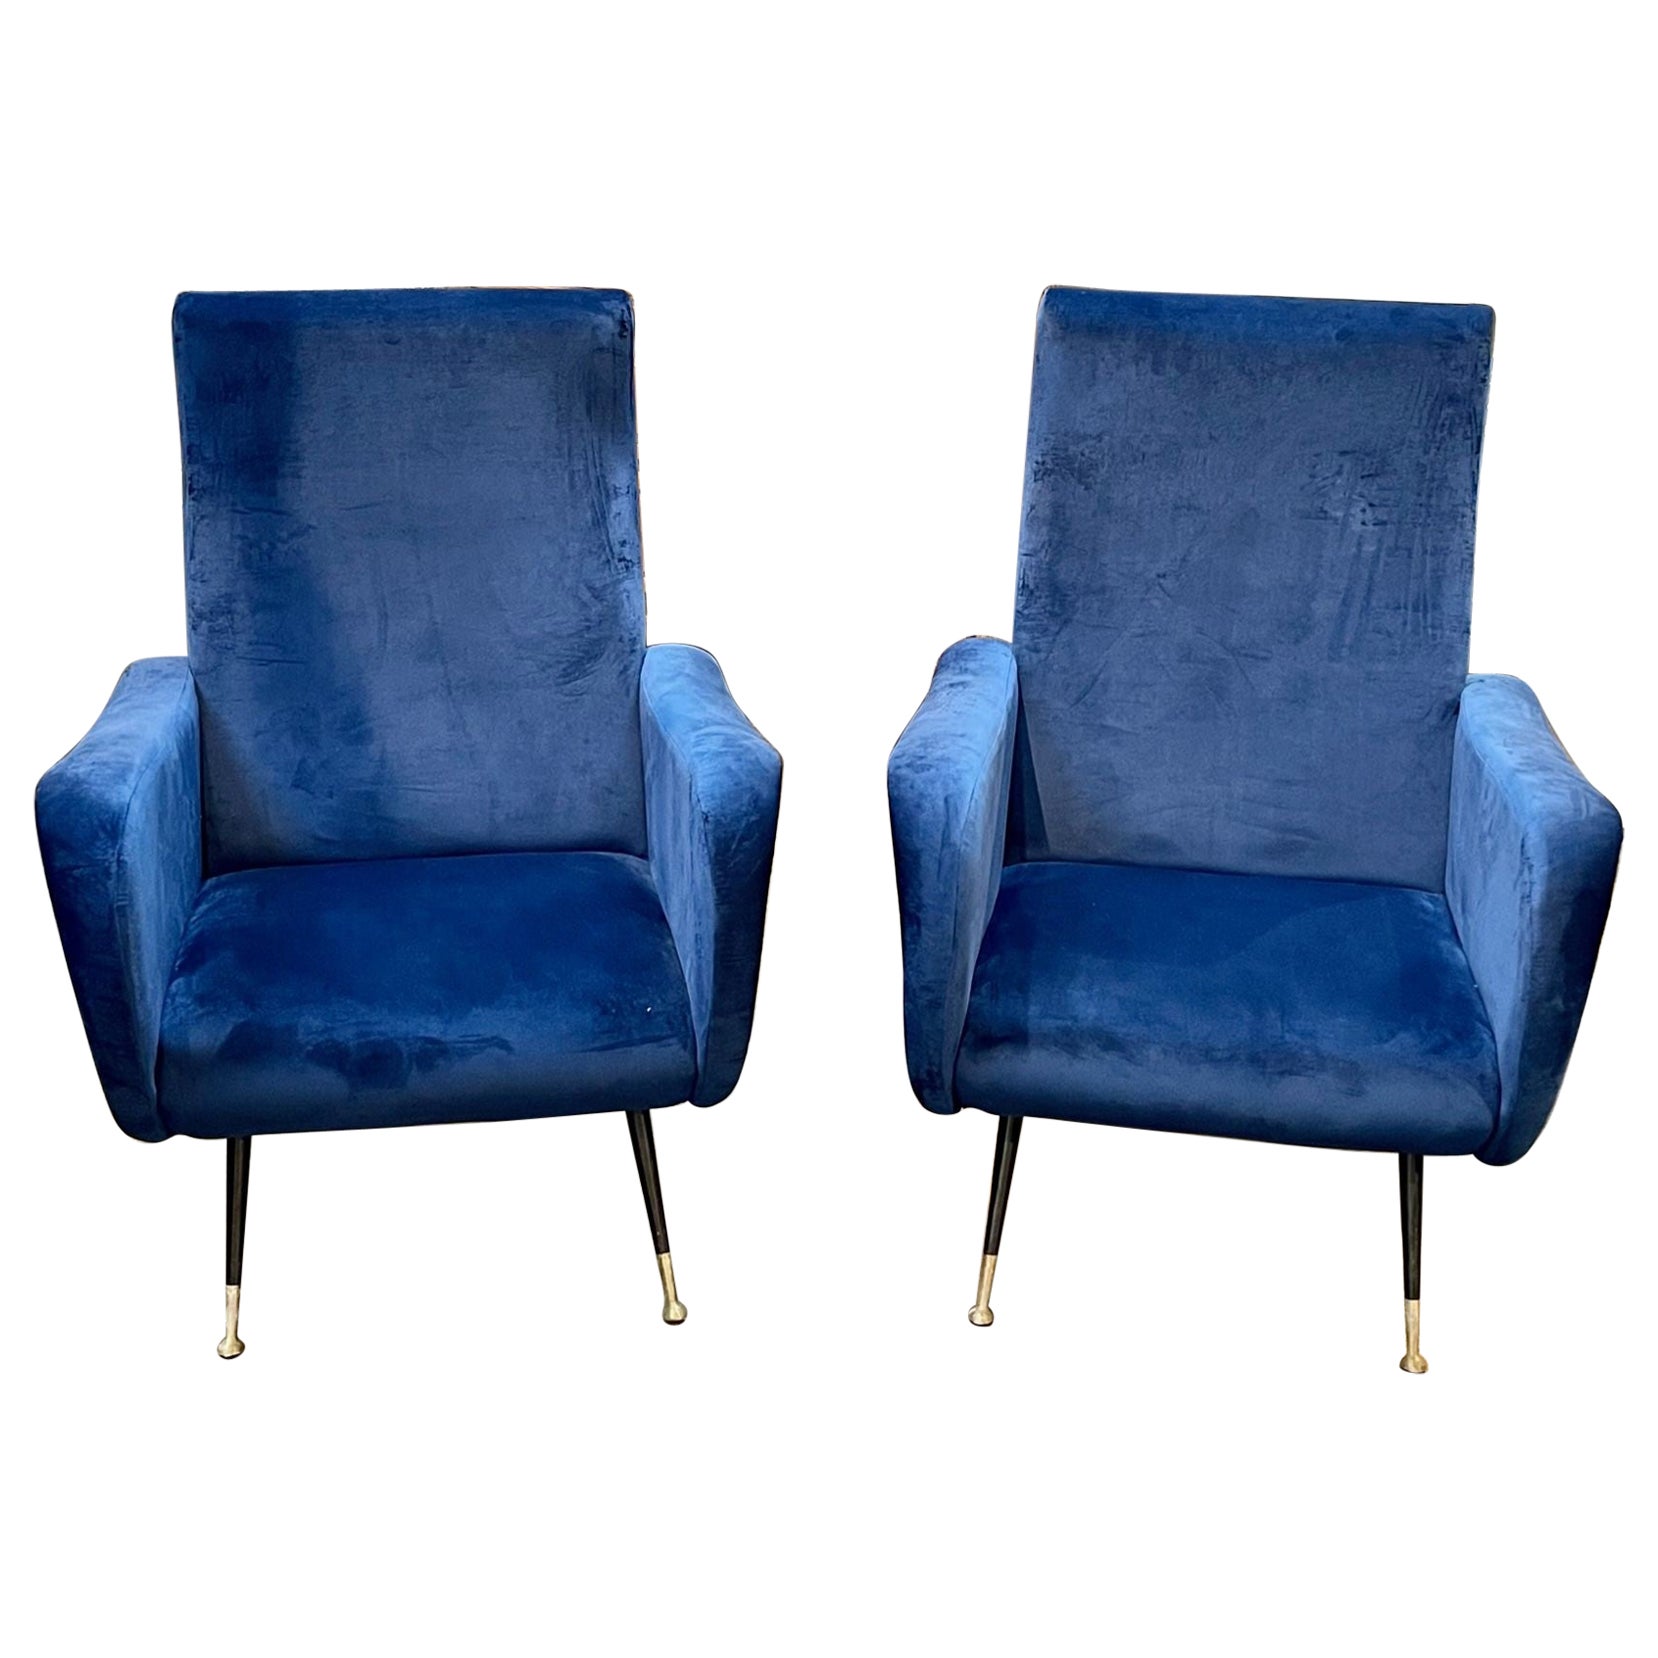 Pair of Italian Mid-Century Navy Gio Ponti Style Chairs